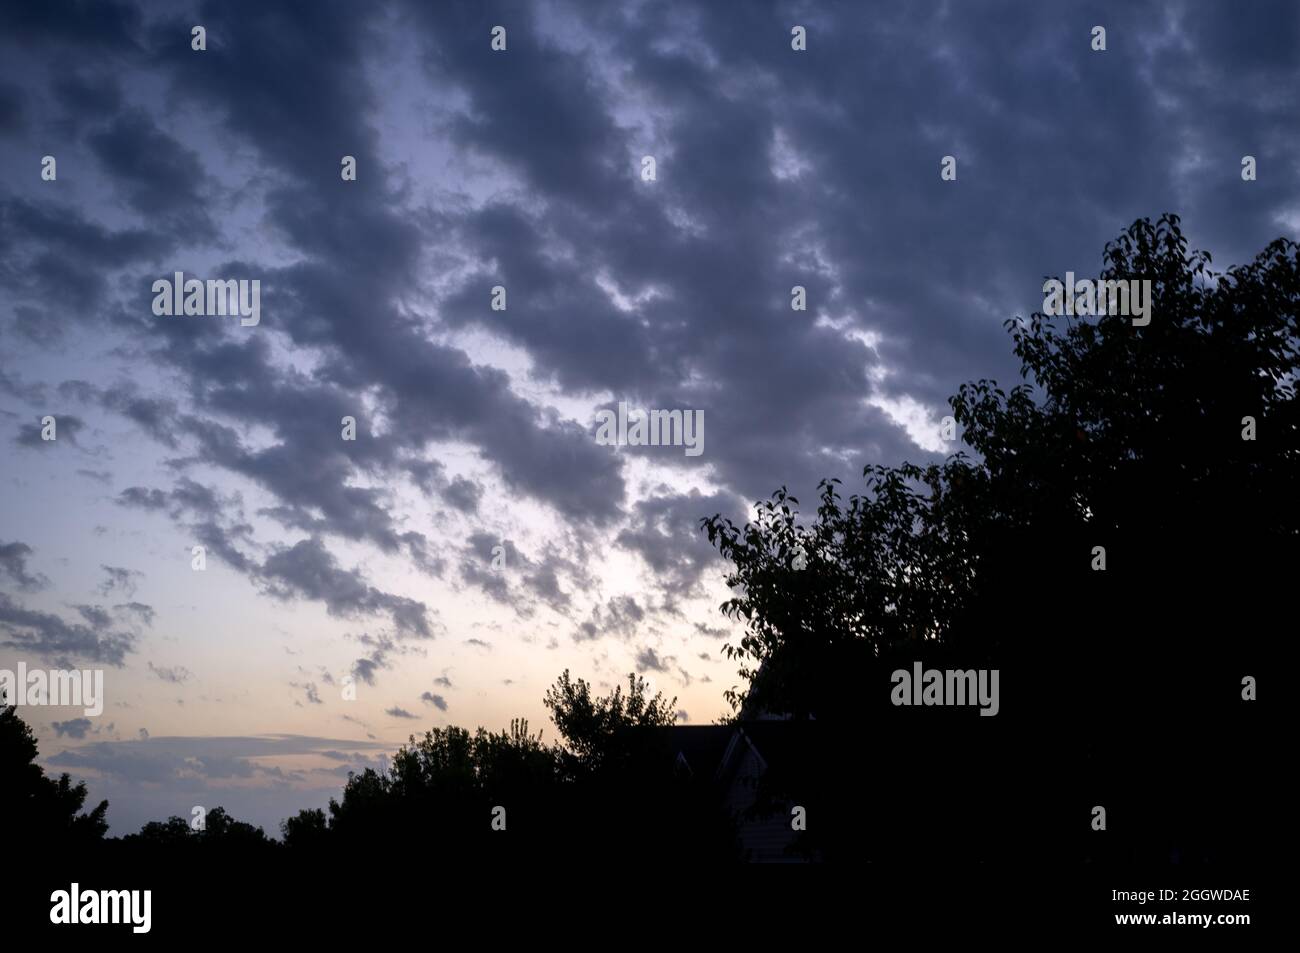 Sonnenaufgang durchdringt die Wolken im Vorort St. Louis, Missouri USA Samstag, 28. August 2021. Foto © Copyright 2021 Sid Hastings. Stockfoto